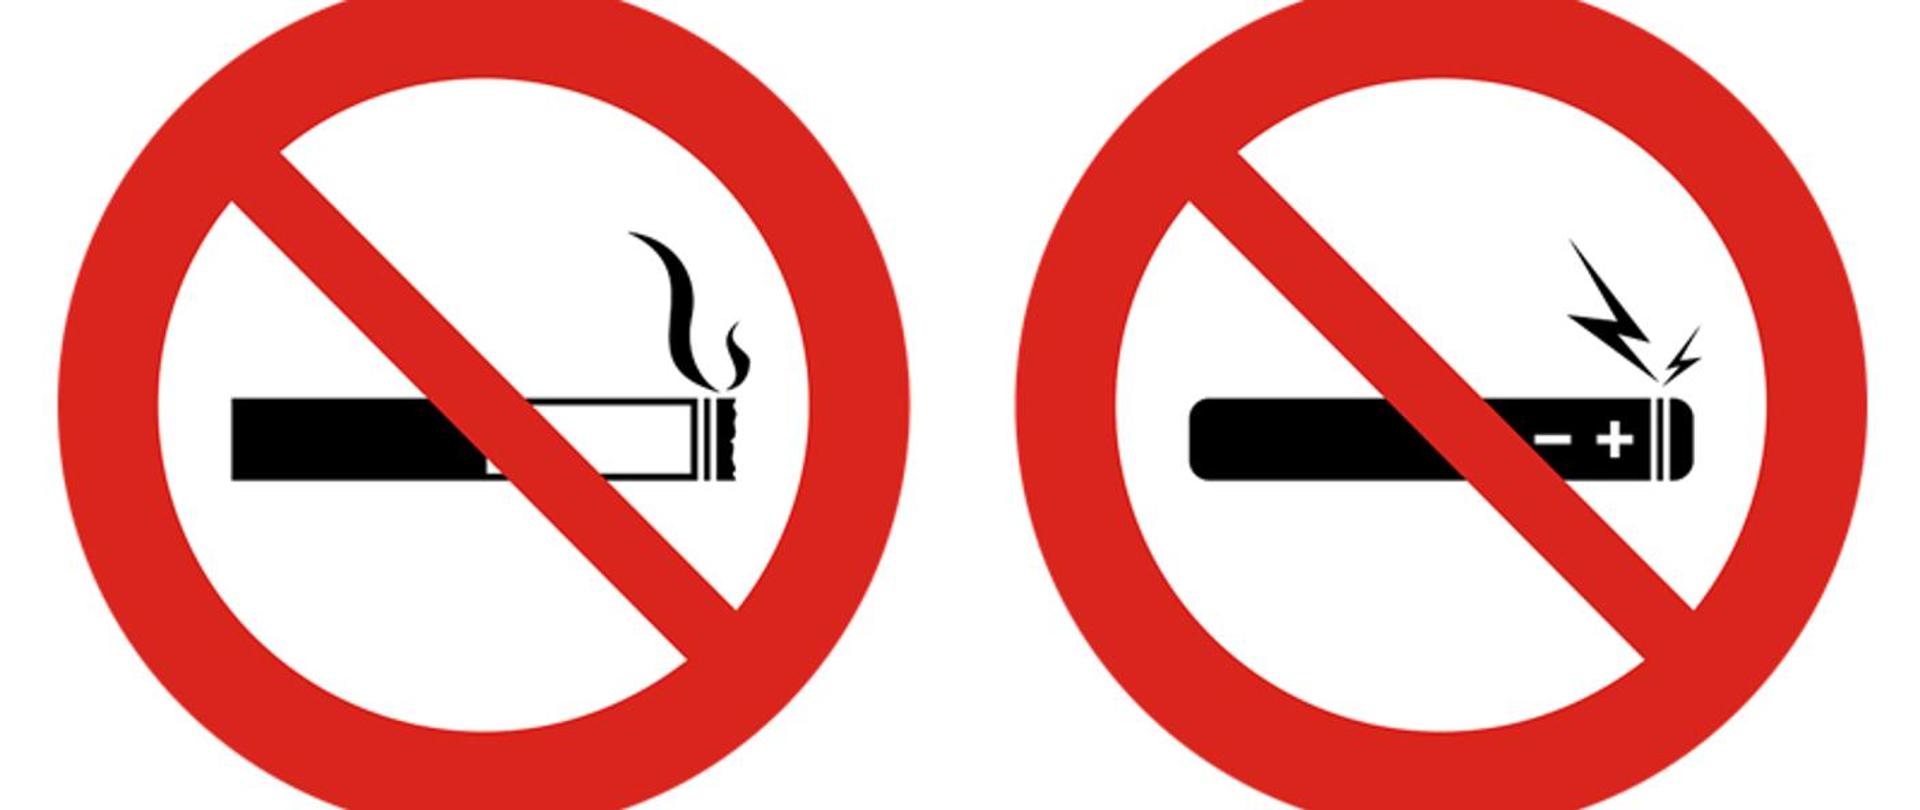 Światowy Dzień Rzucania Palenia grafika przedstawia przekreślonego papierosa tradycyjnego oraz elektronicznego